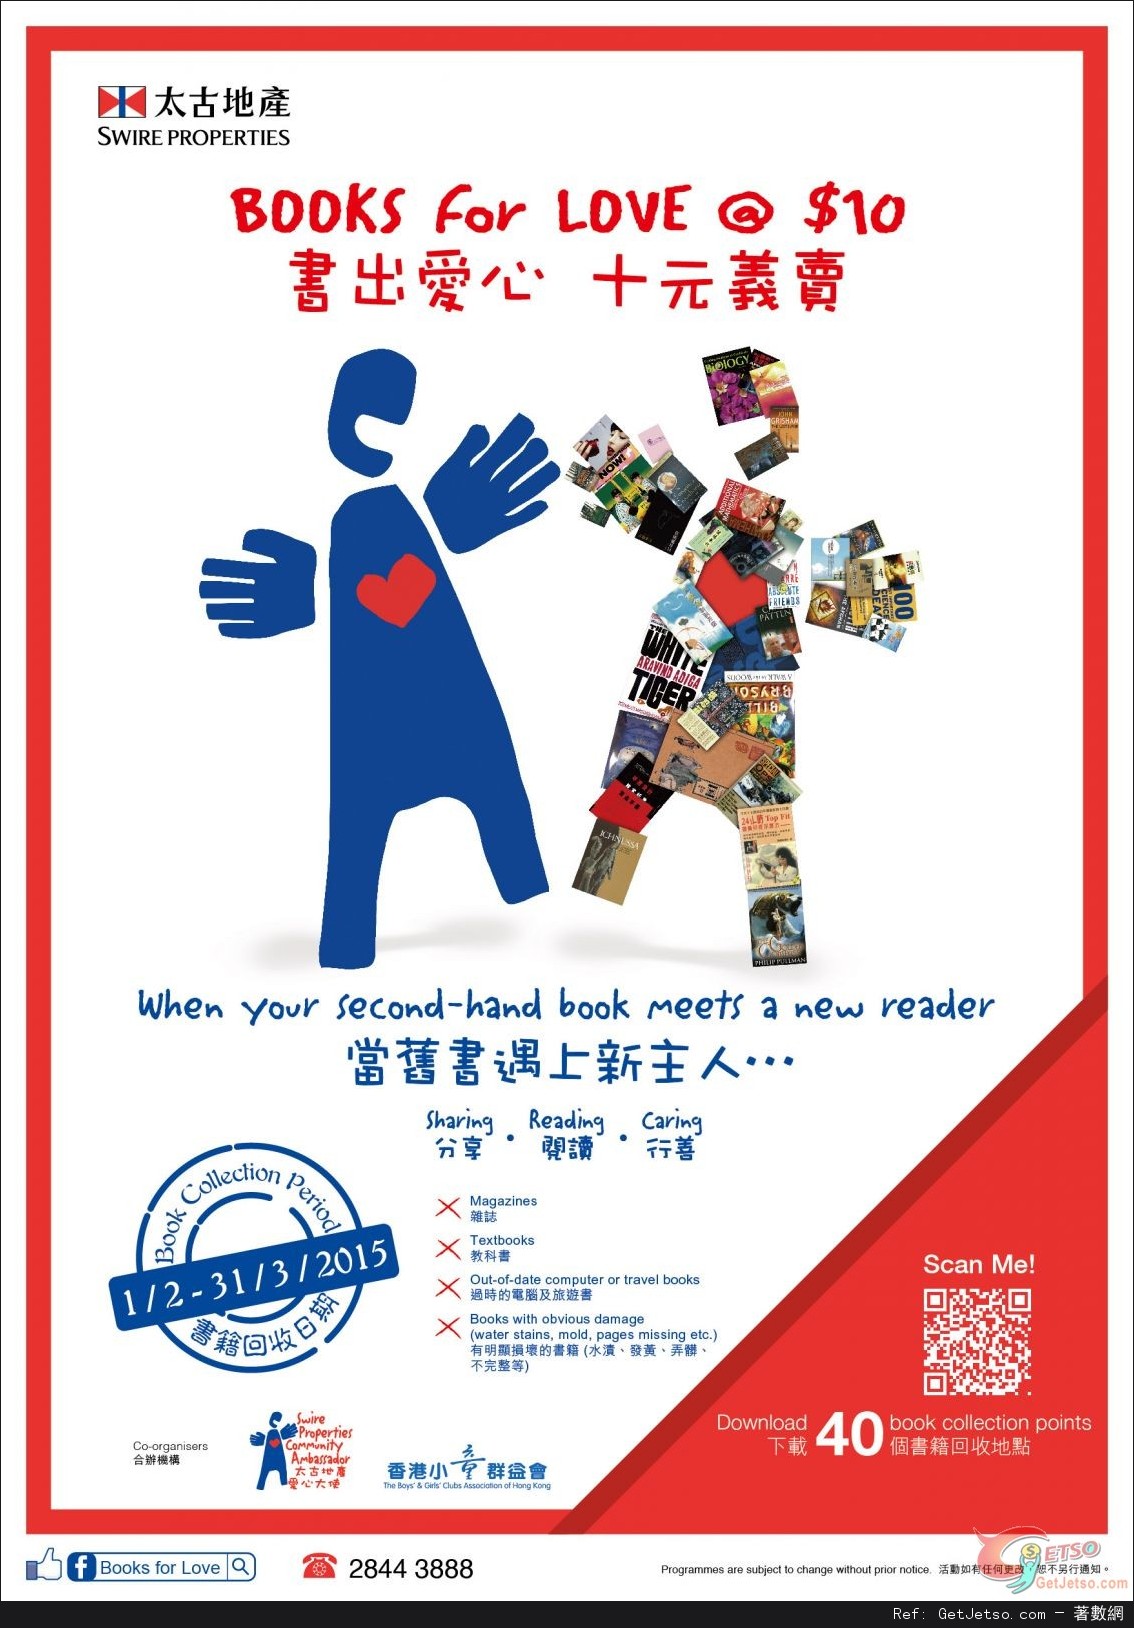 太古地產X香港小童群益會「書出愛心十元義賣」活動(至15年3月31日)圖片1